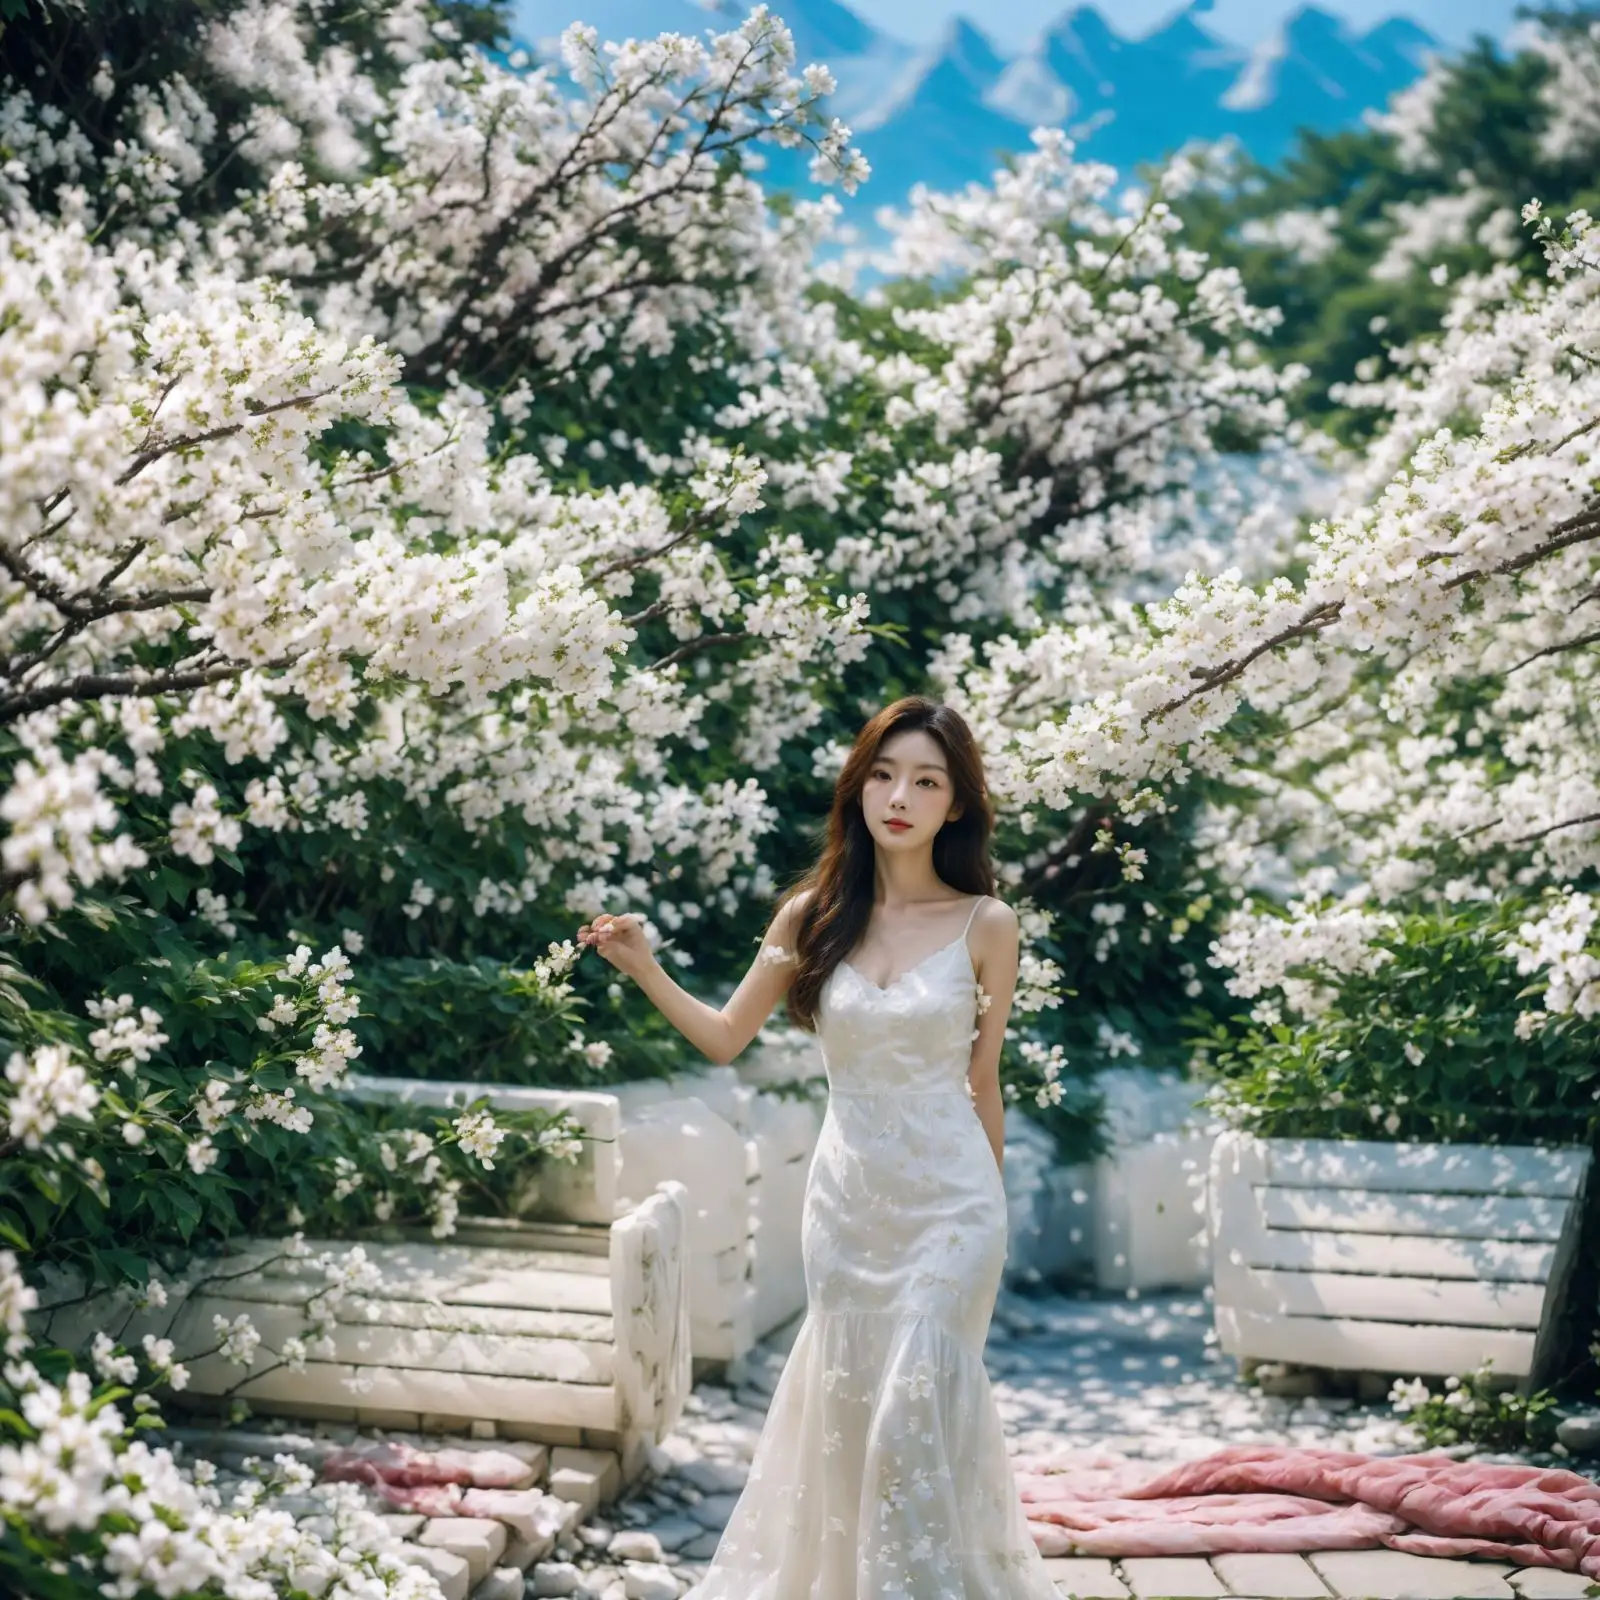 Design fatto a mano su misura fai da te finti Sakura fiori artificiali fiori di ciliegio bianco alberi di fiori per la casa di nozze decorazione